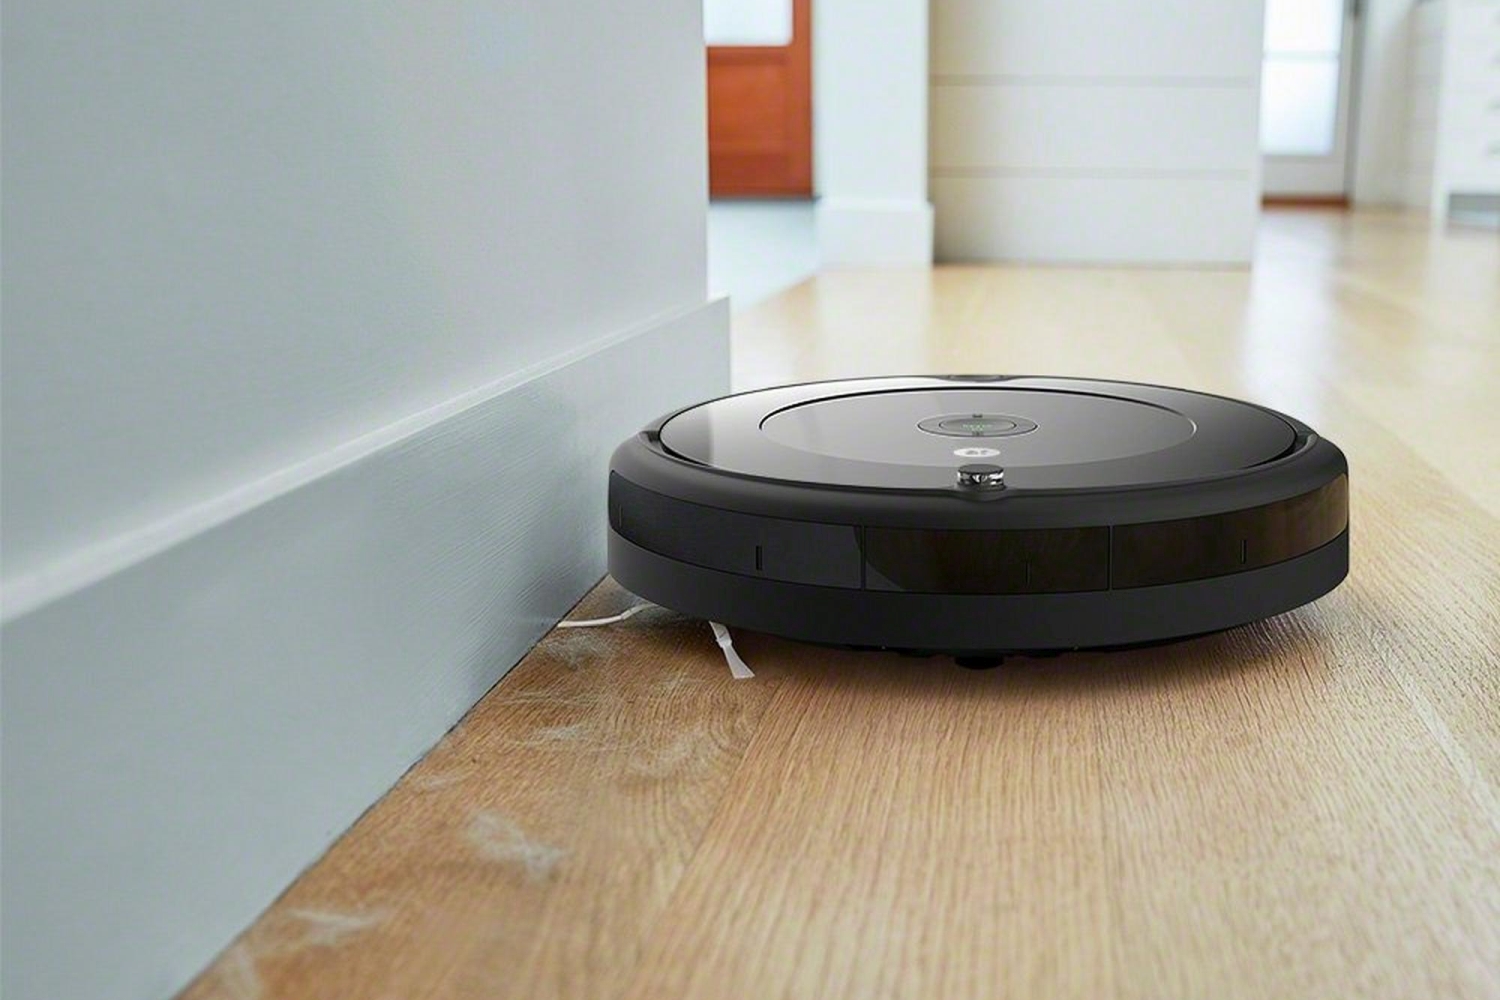 O iRobot Roomba 692 limpando um piso.